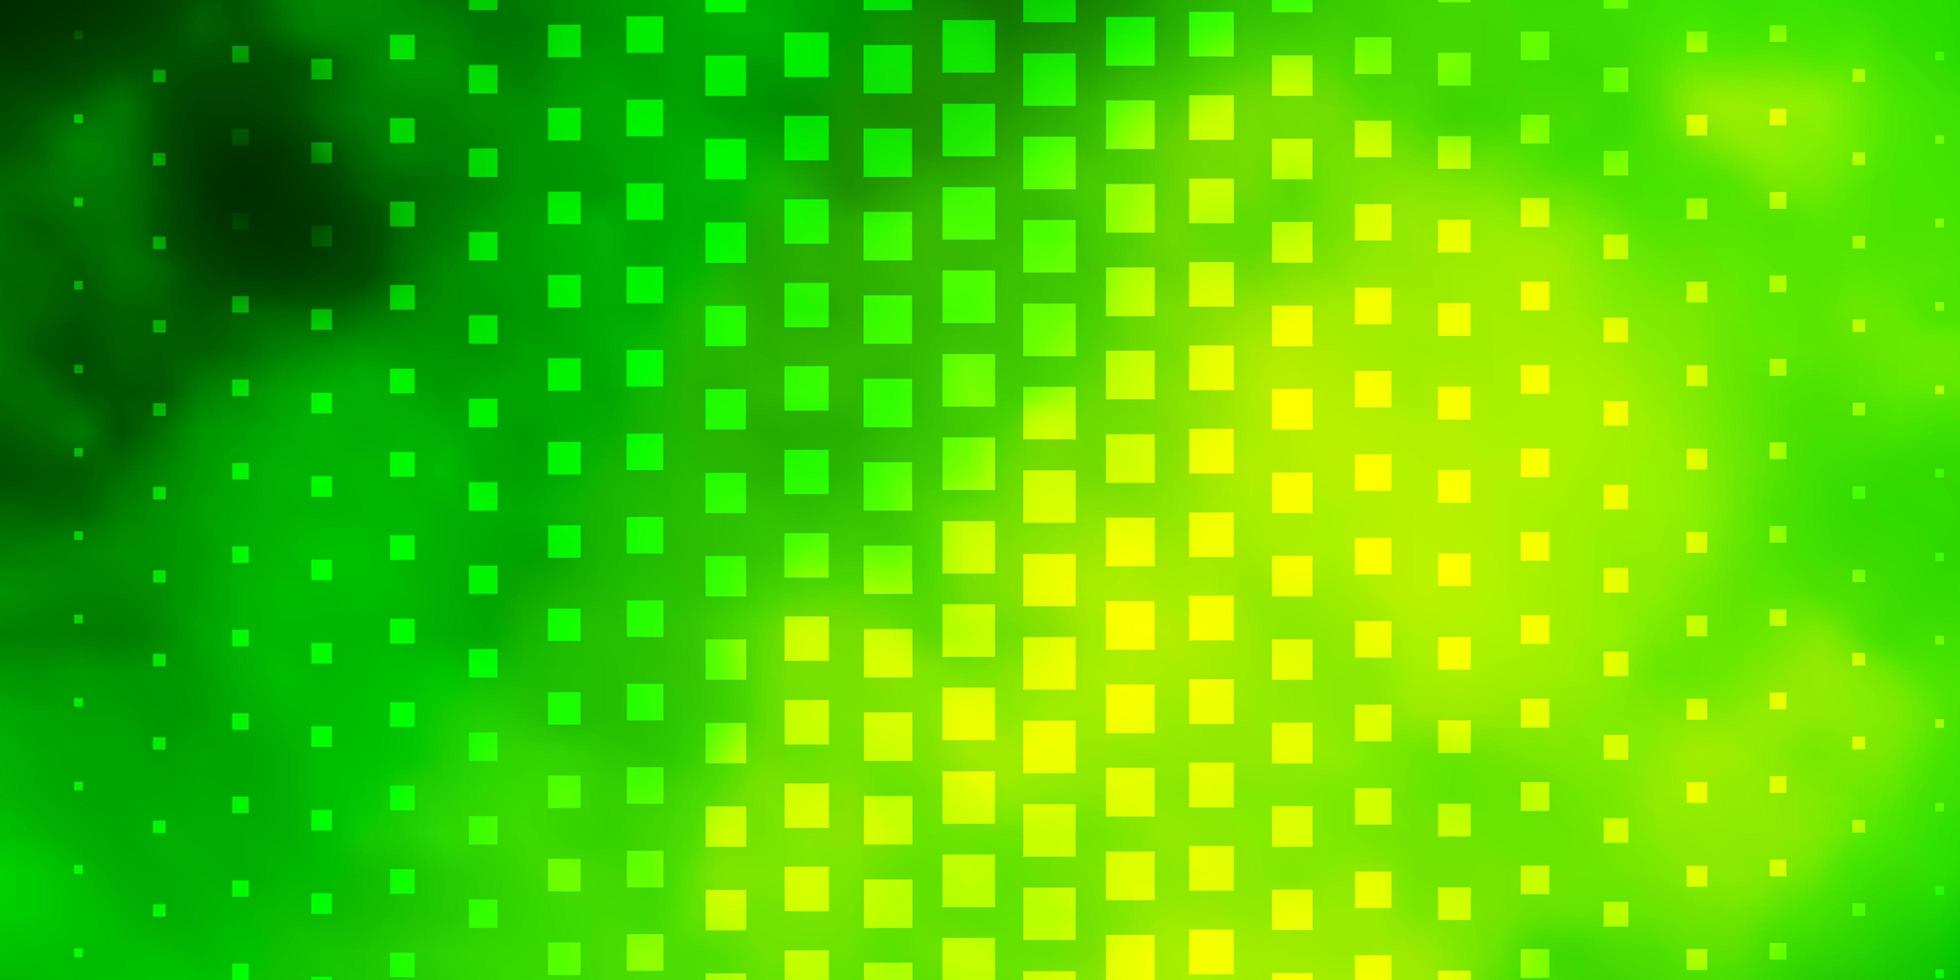 lichtgroene, gele vectorlay-out met lijnen, rechthoeken. kleurrijke illustratie met gradiëntrechthoeken en vierkanten. patroon voor websites, bestemmingspagina's. vector